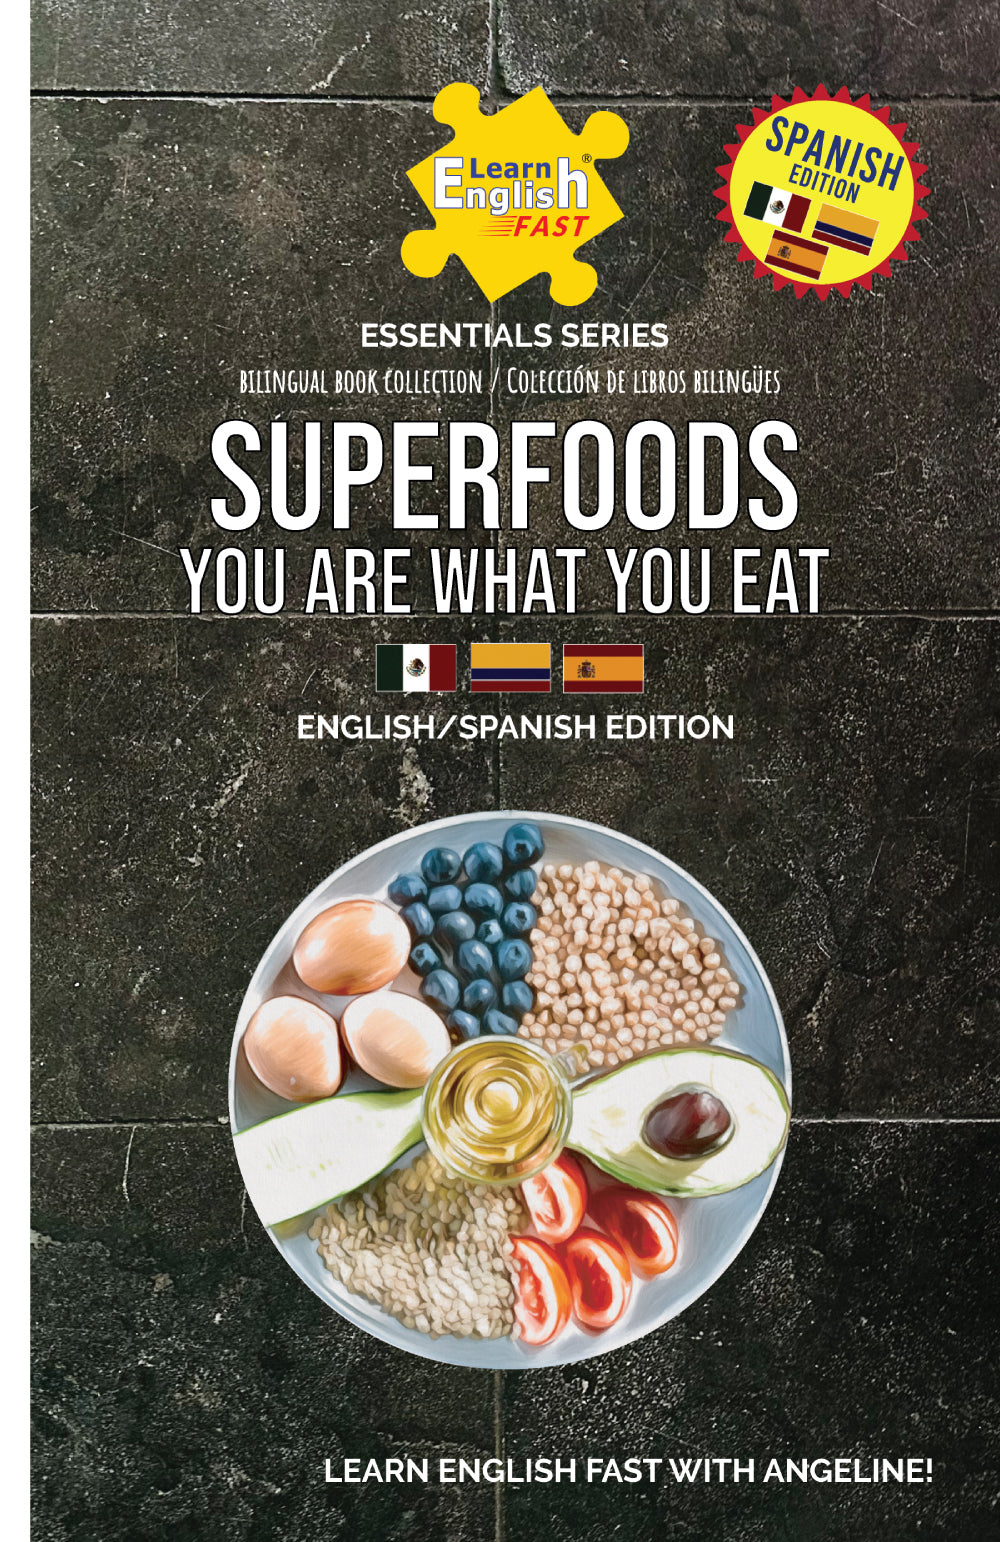 libro bilingue ingles español sobre alimentos cocidos o crudos